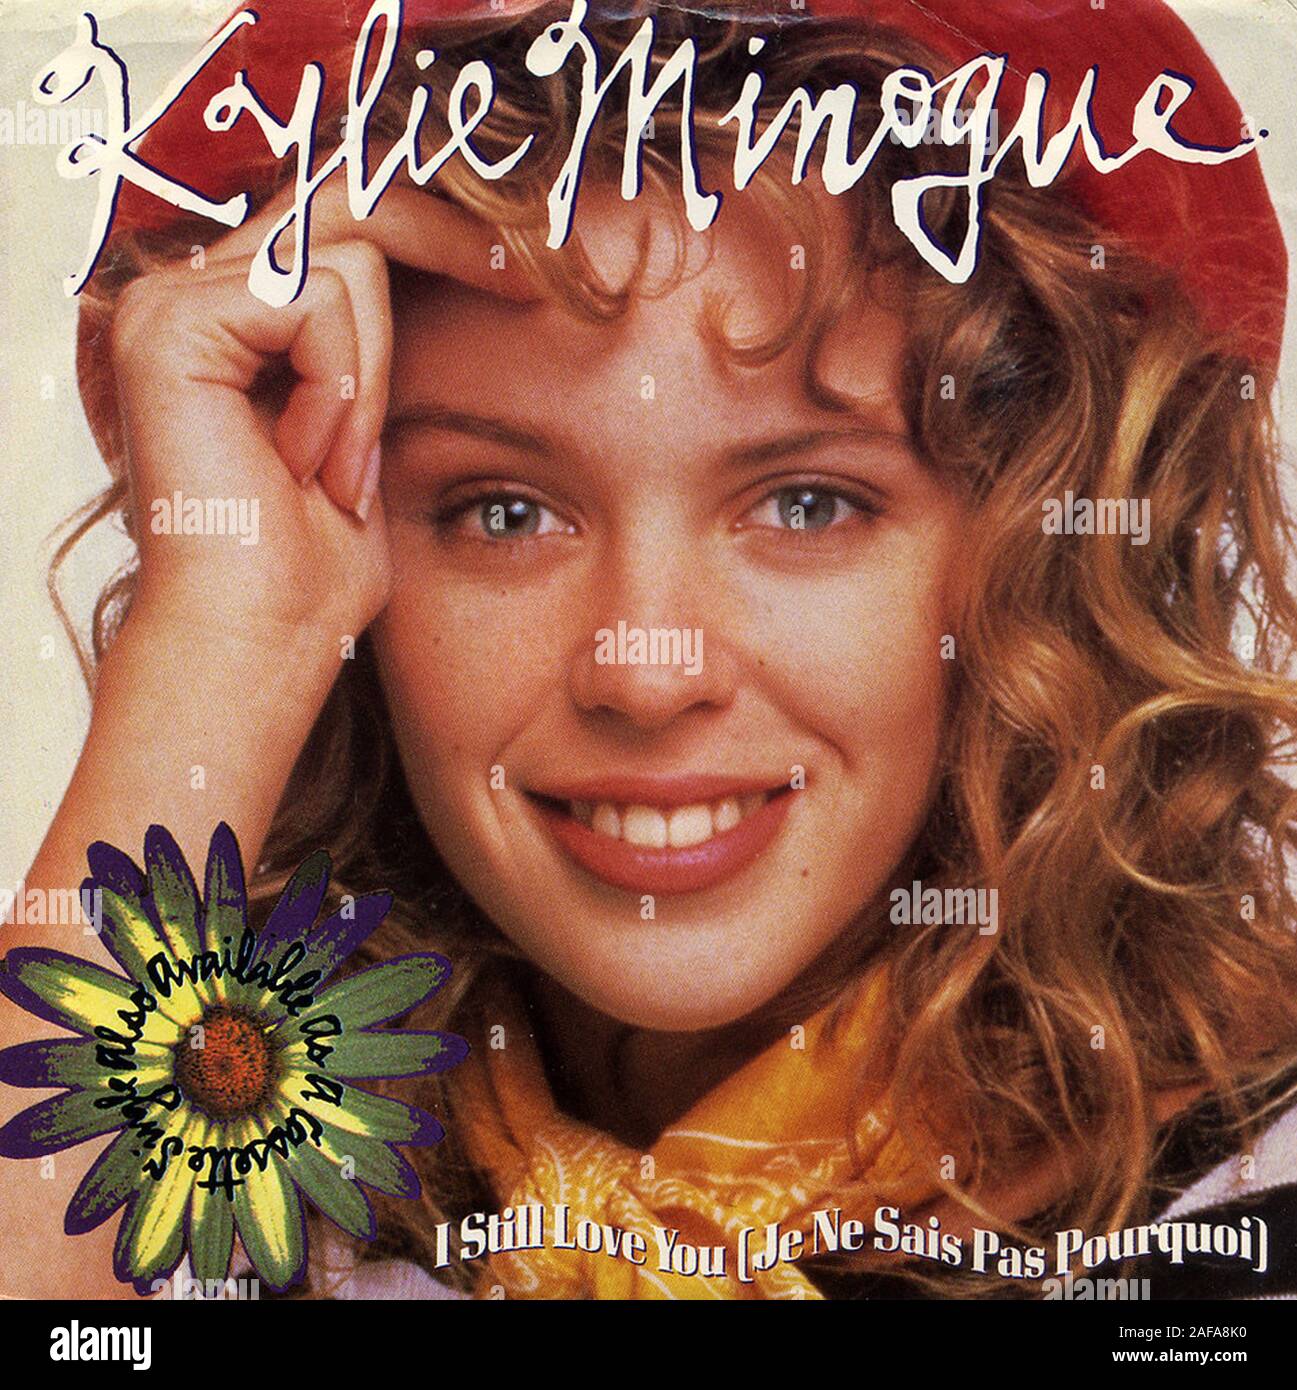 Kylie Minogue - Te sigo queriendo (Je ne sais pas Pourquoi